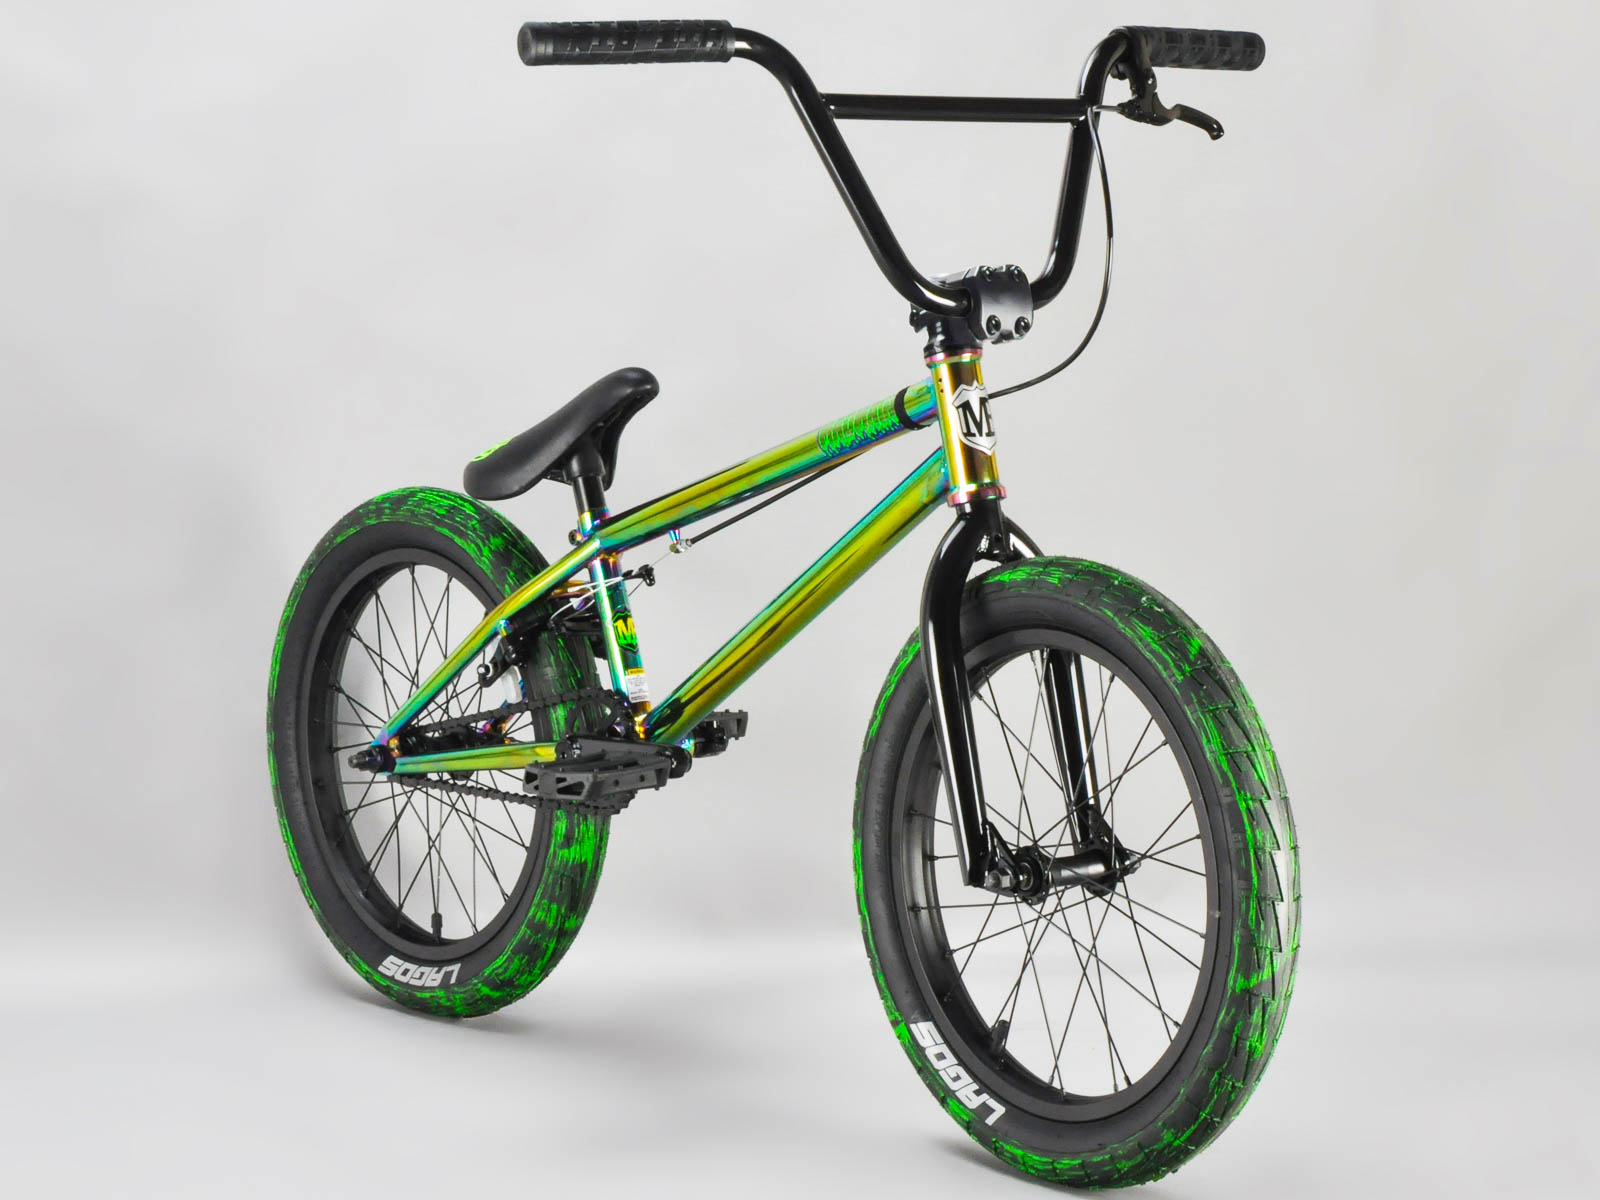 Купить за 10 000. Трюковой Rainbow BMX велосипед. BMX Grasshopper зеленый. BMX Bose зелёный 2006. Shbejia BMX велосипед.